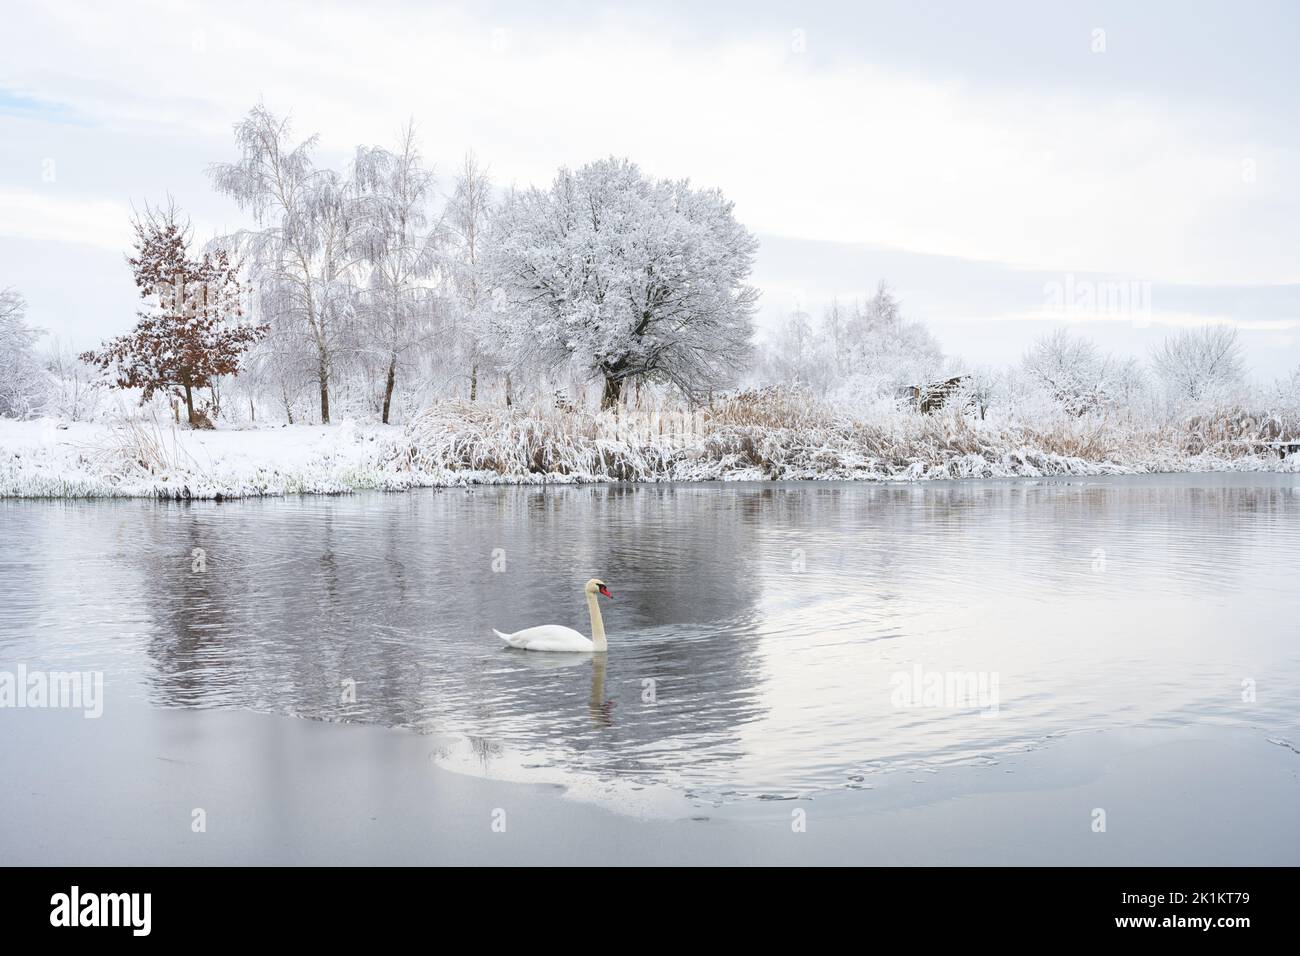 Solo cisne blanco nadará en el agua del lago de invierno al amanecer. Árboles nevados helados en el fondo. Fotografía animal Foto de stock